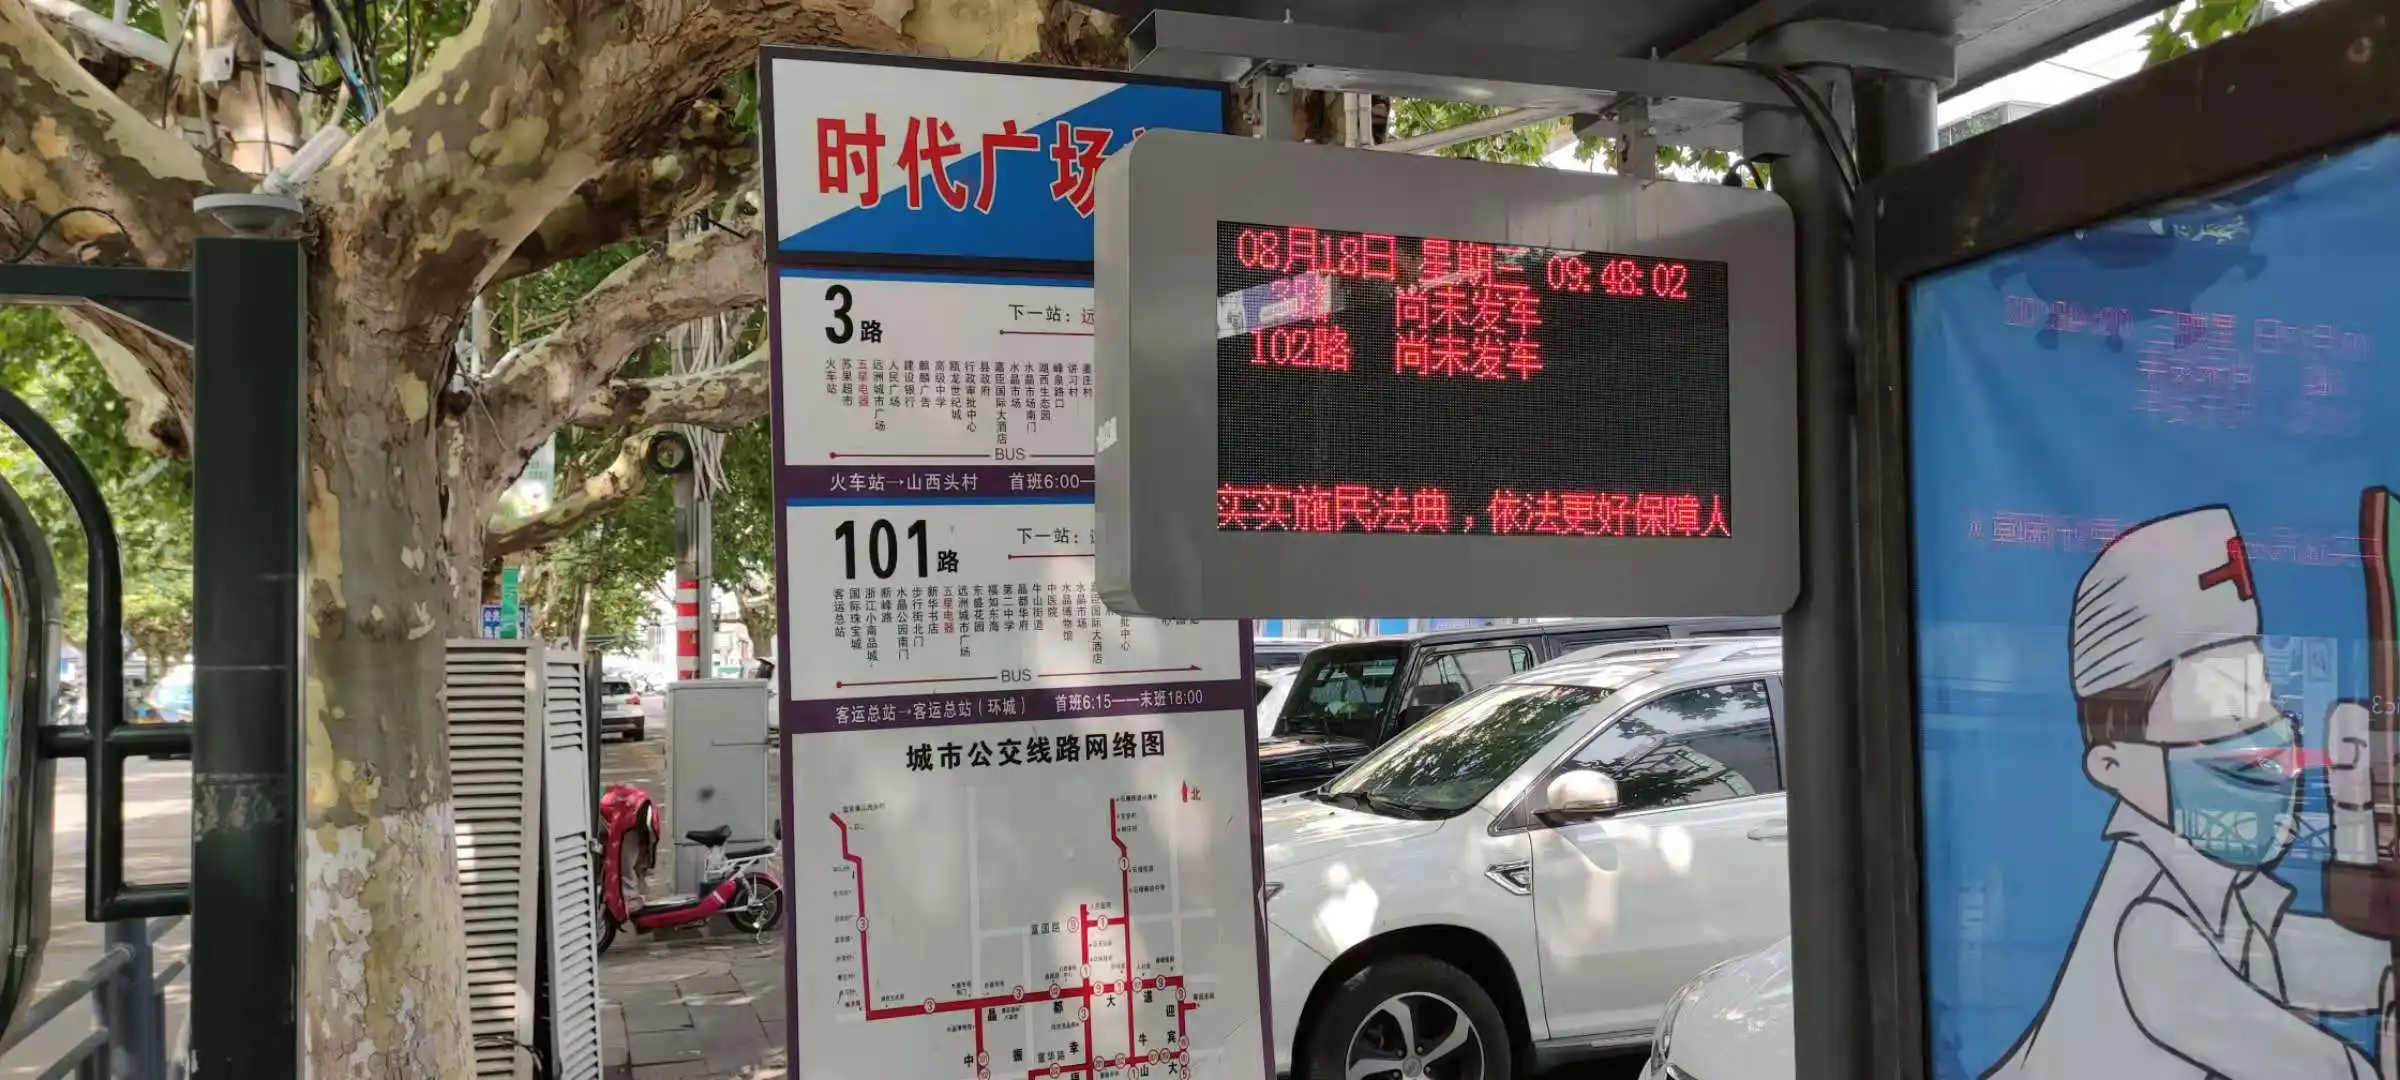 Система автобусной остановки с 4g/wifi от shenzhen